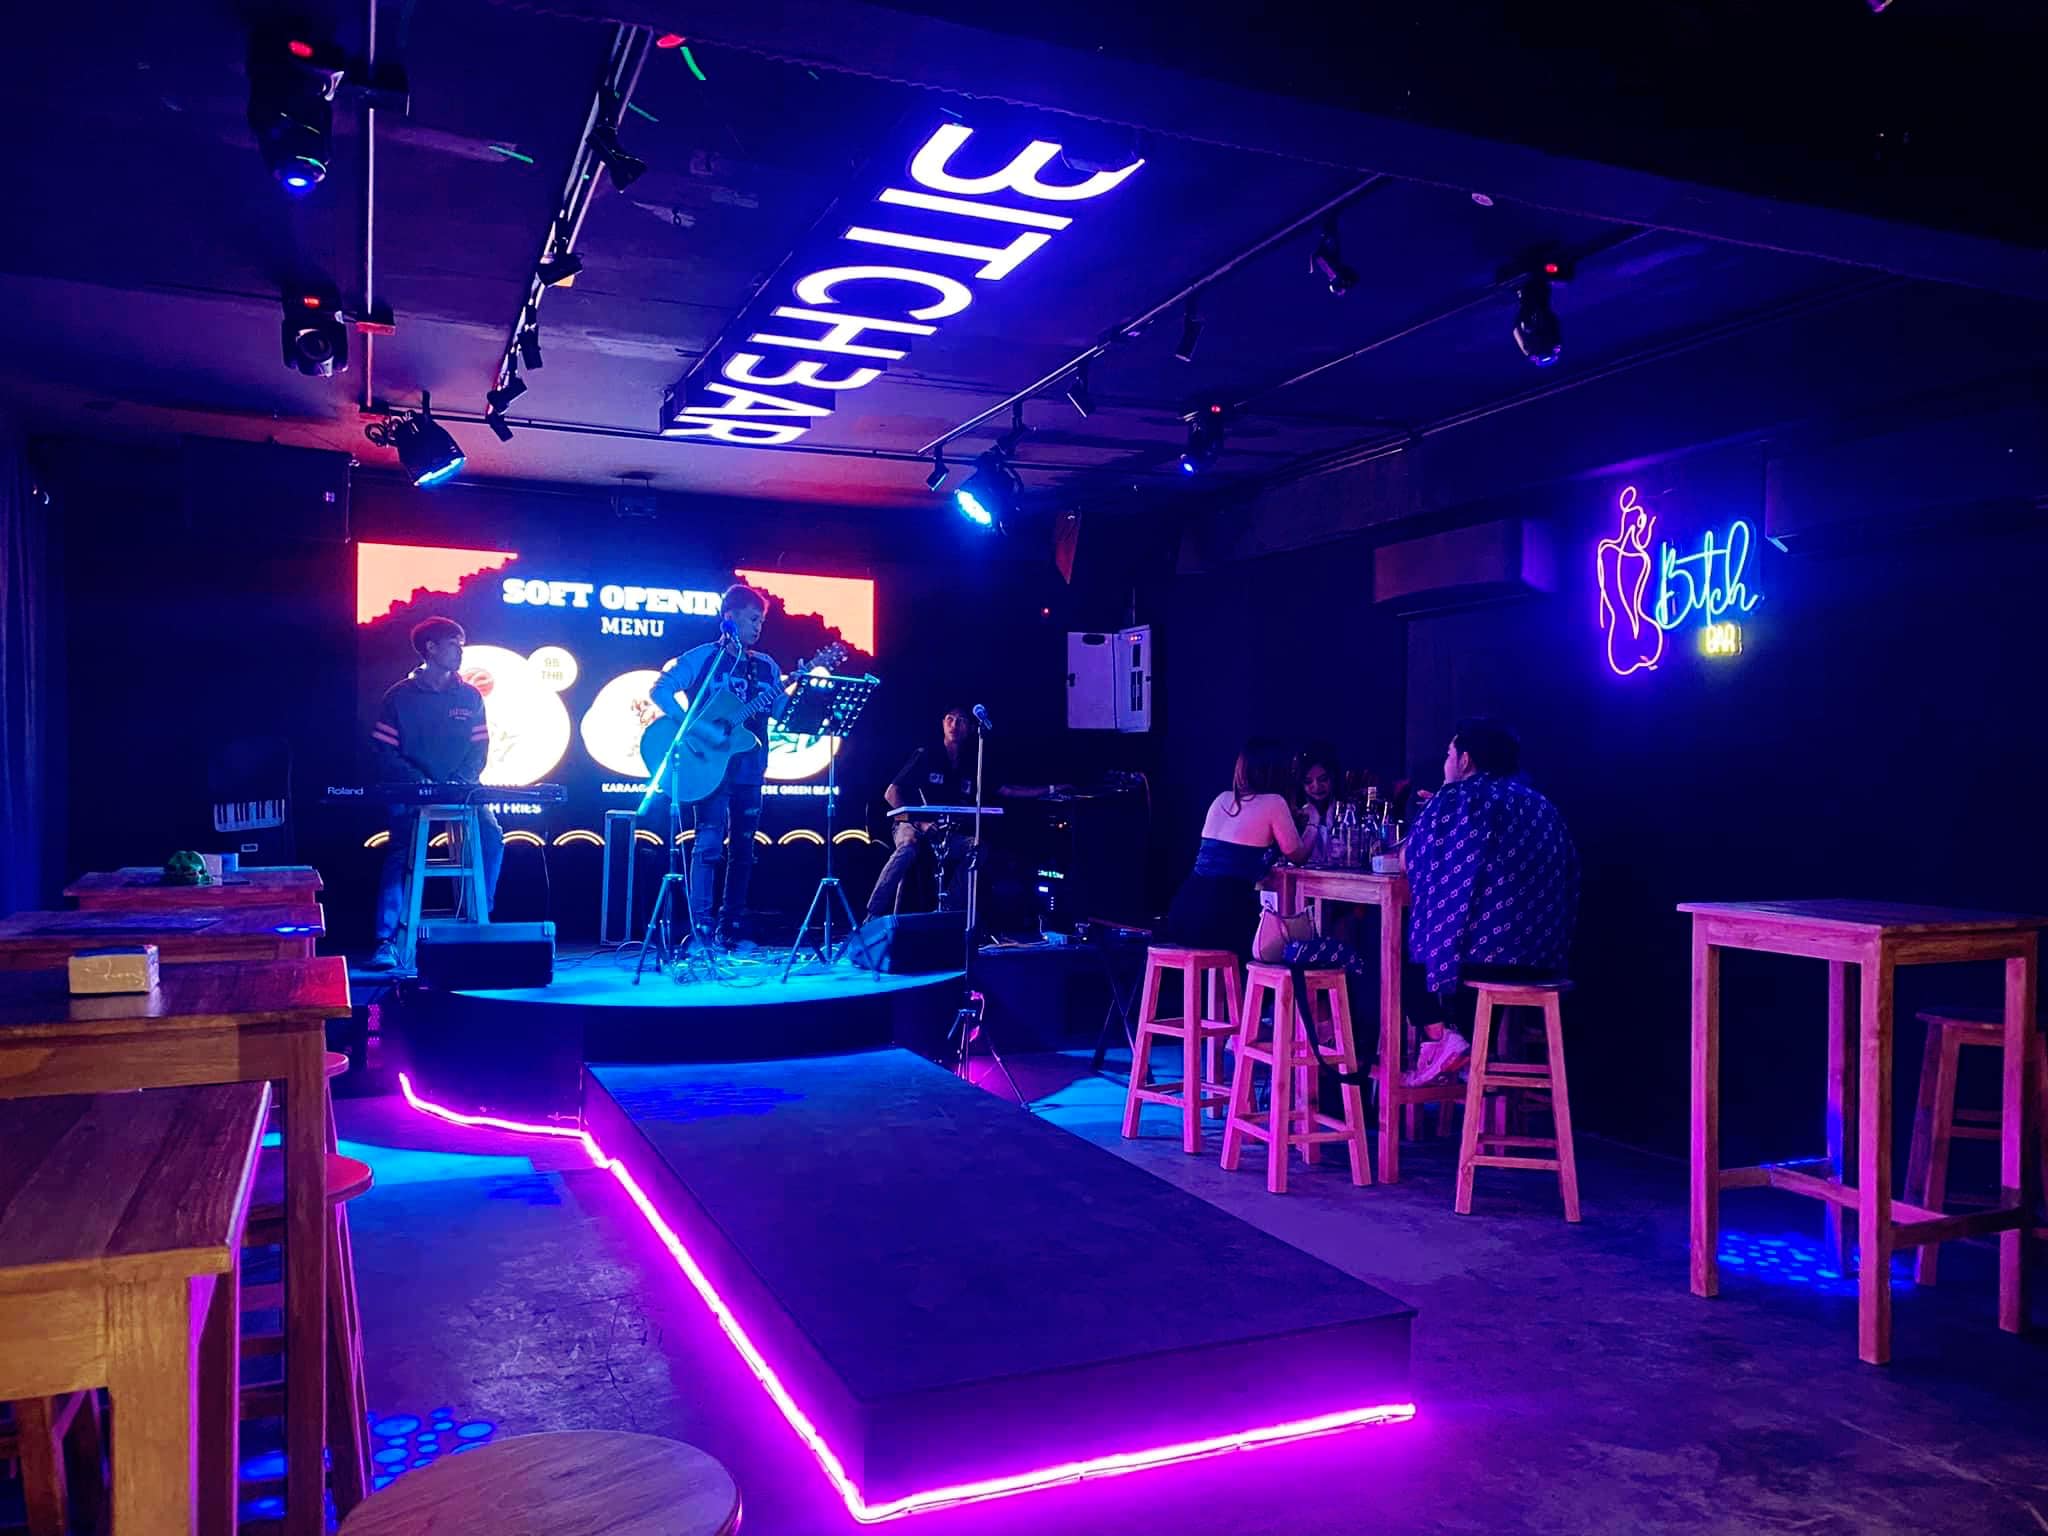 บีช บาร์ (Bitch Bar) : เชียงใหม่ (Chiang Mai)